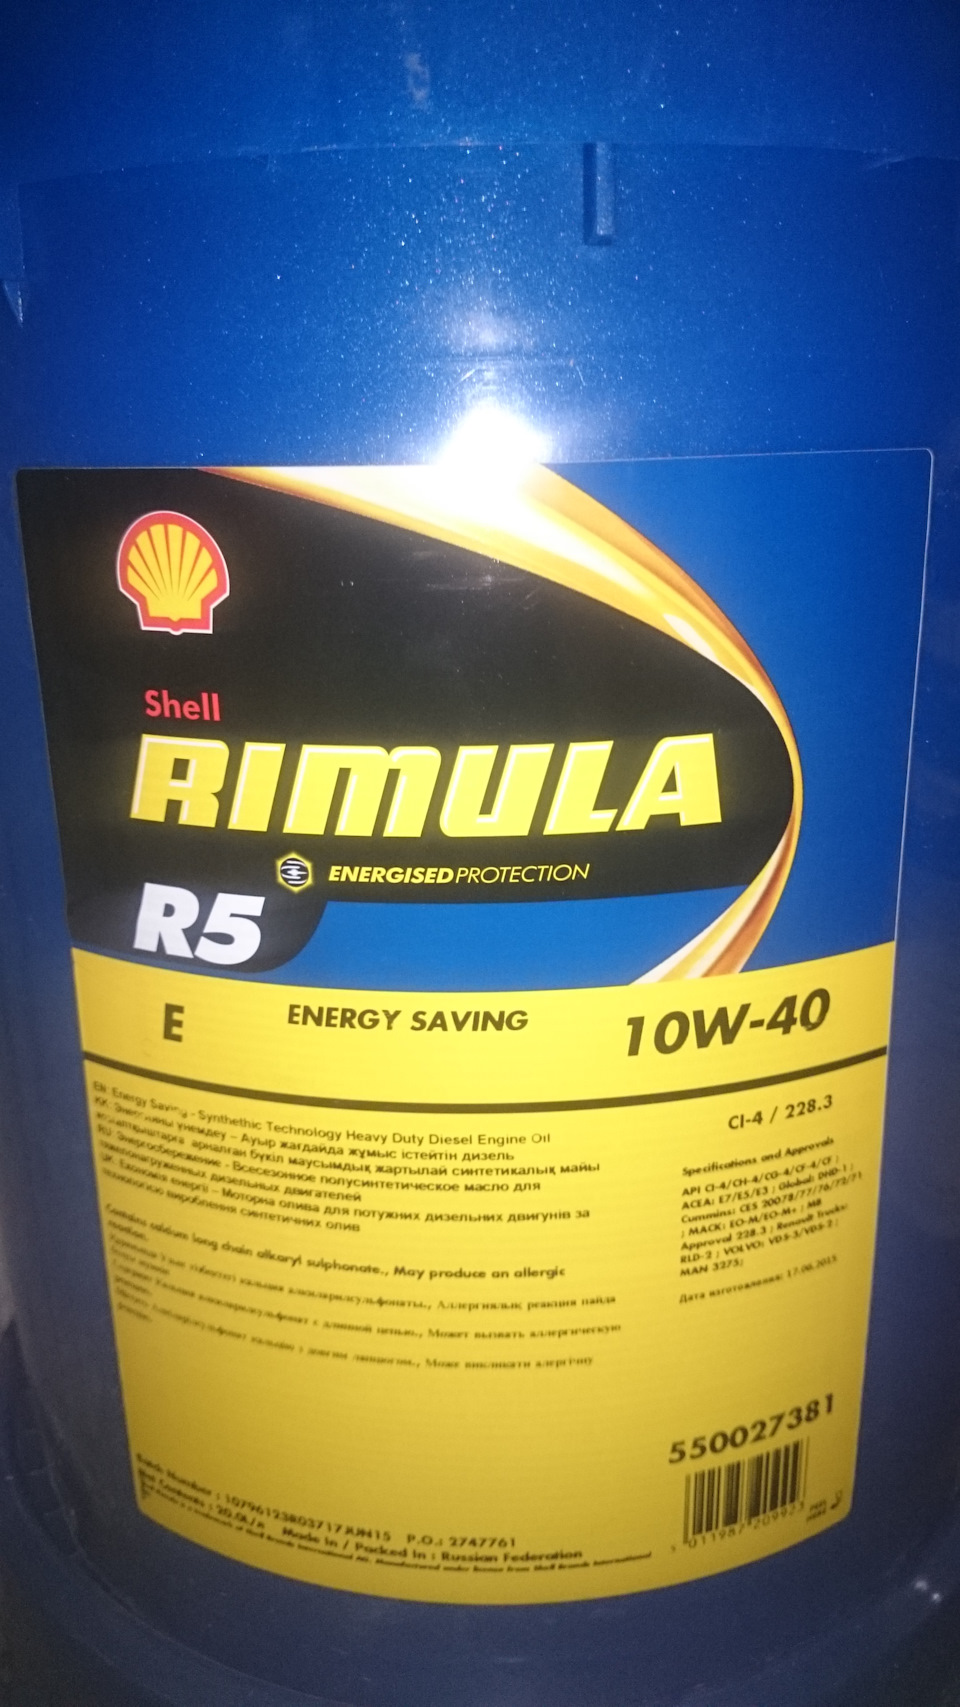 Масло для дизеля в бензиновый двигатель. Shell Rimula r5 10w-40. 550027381 Shell. Дизельное масло в бензиновый. Масло Шелл 20 литров.